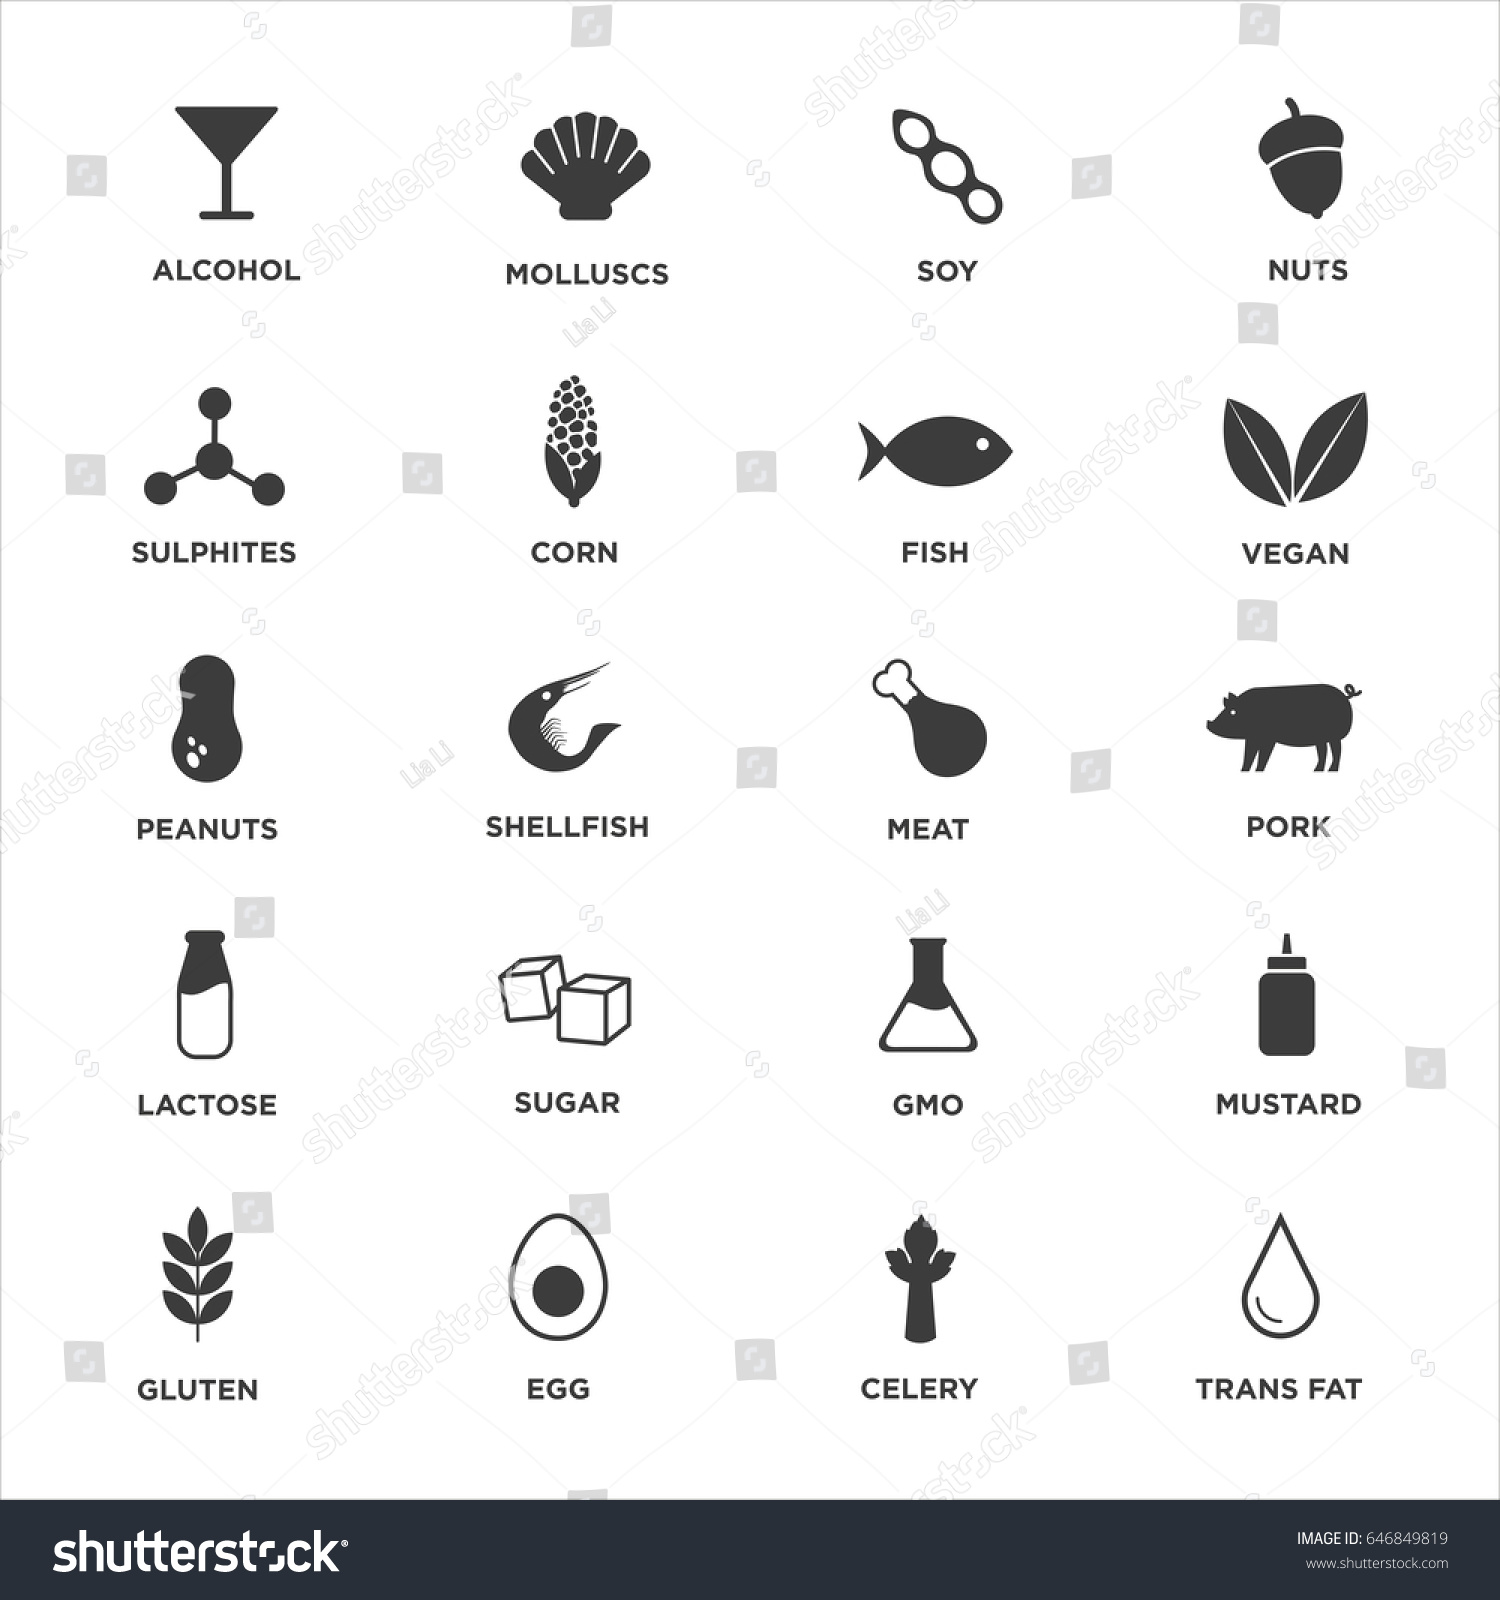 SVG of Allergen icons set. Black and white. Vector illustration.
 svg